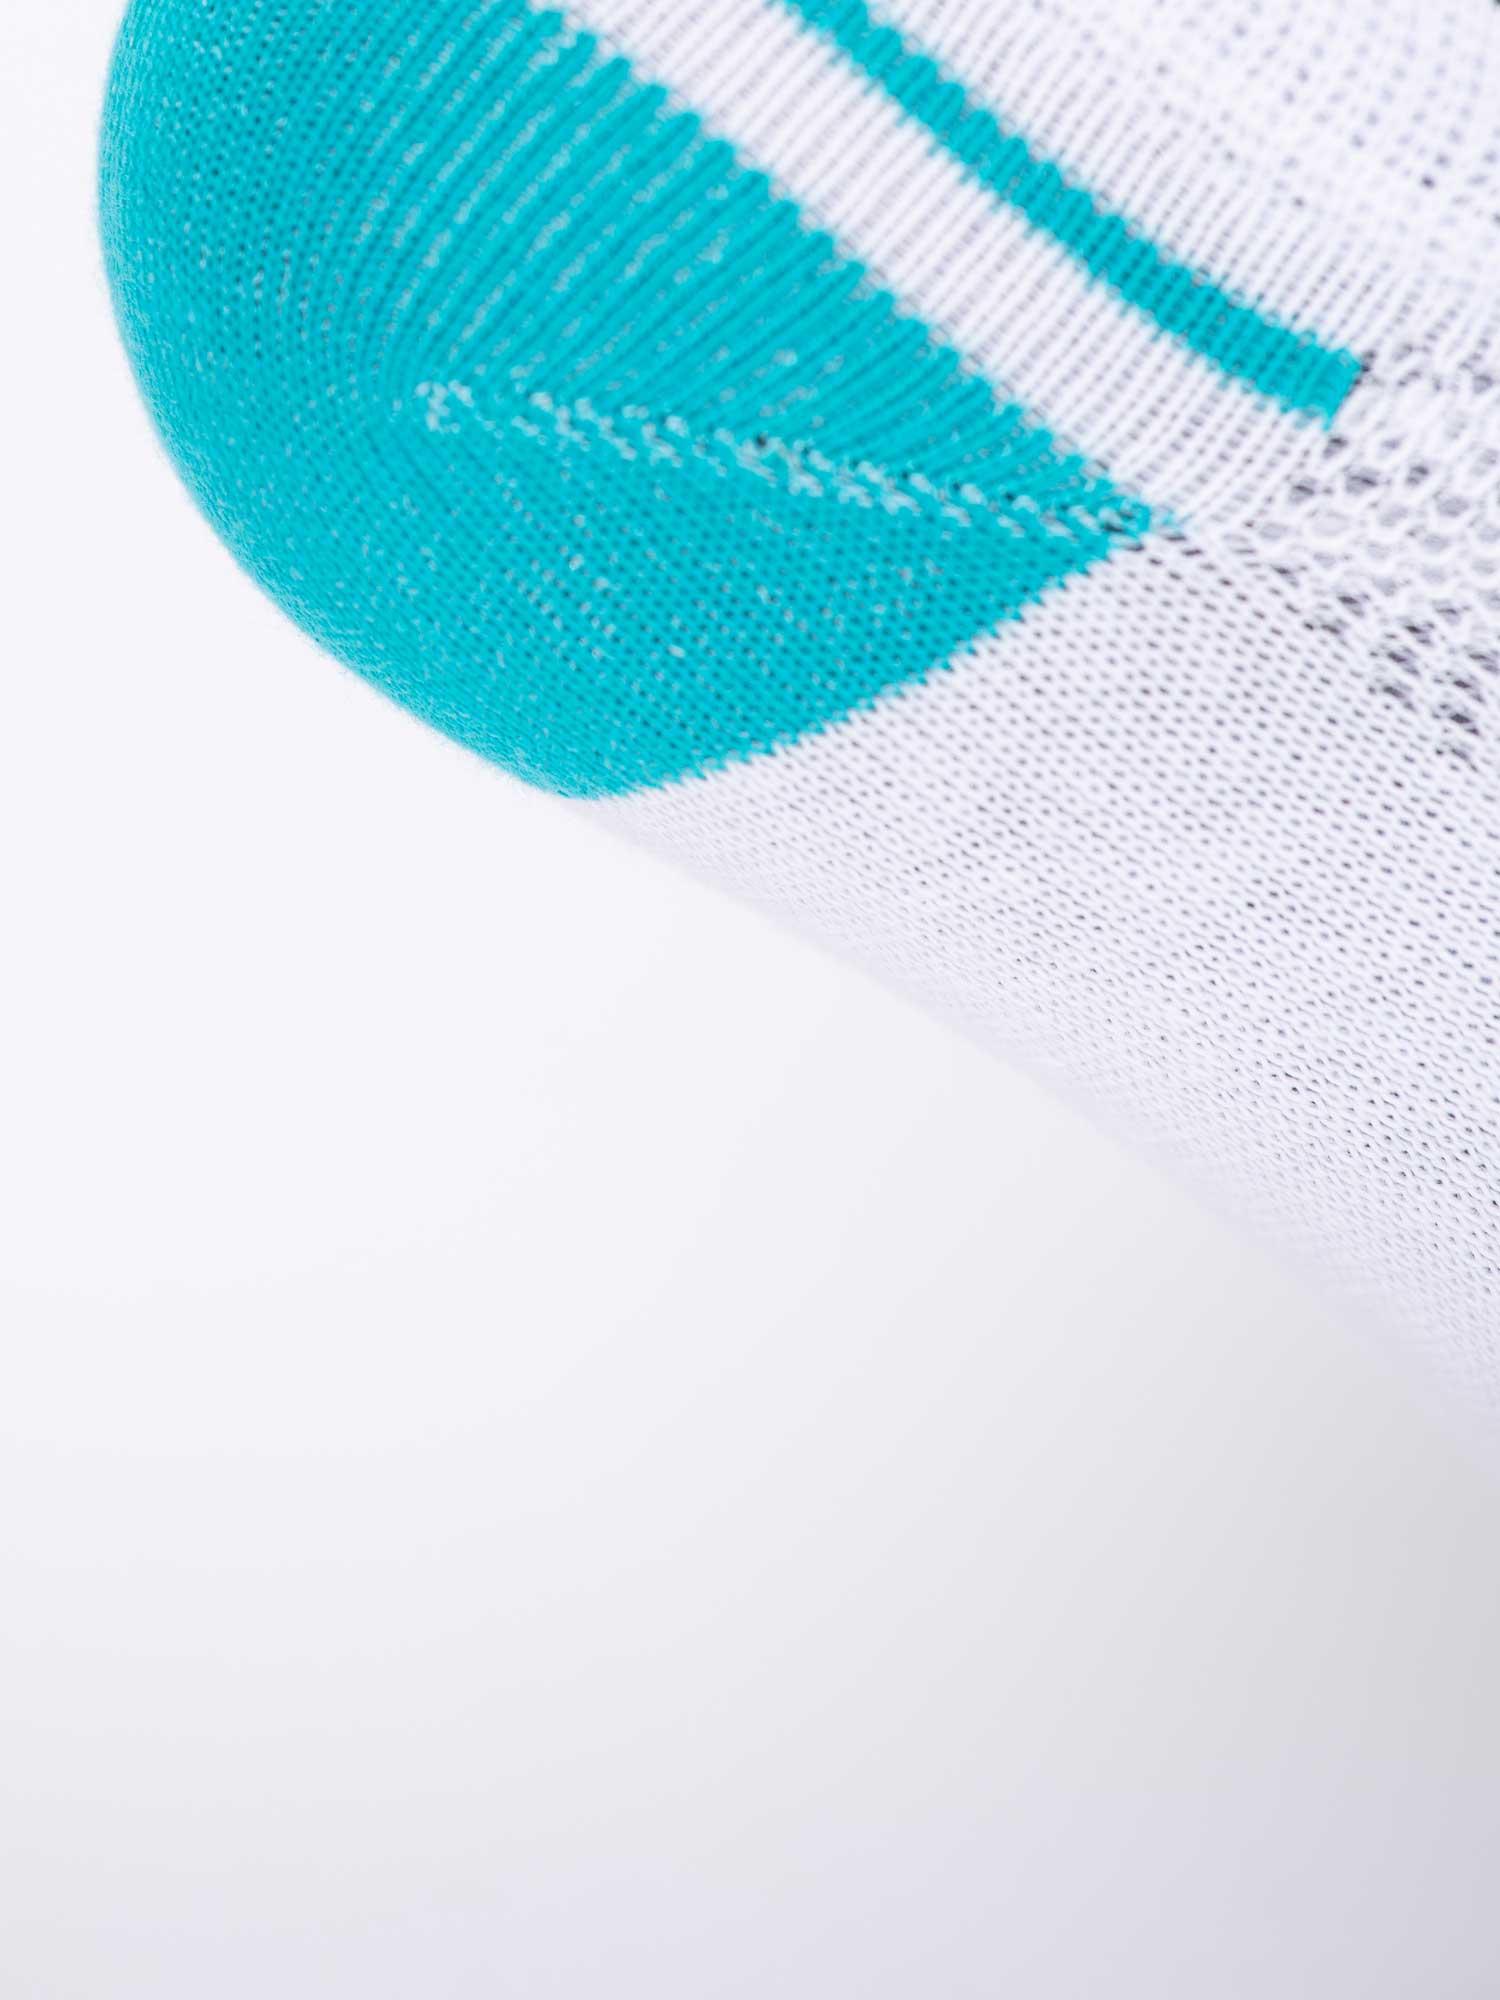 Selected image for BRILLE Muške čarape Summer set x3 Socks šarene